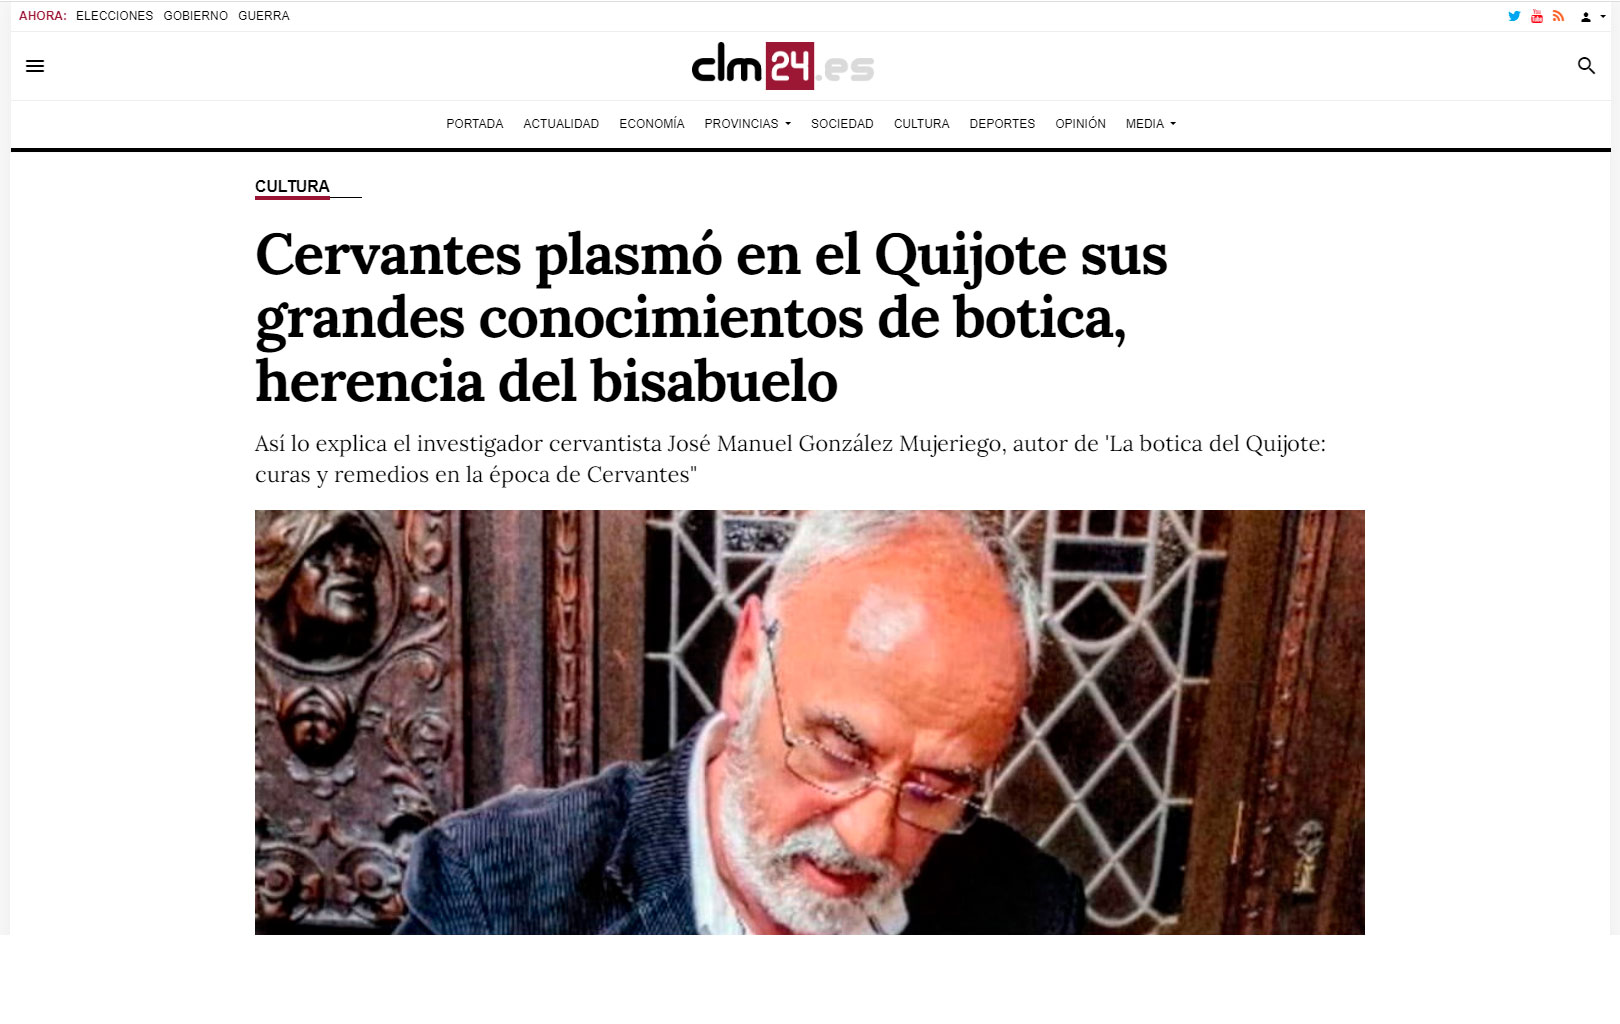 Cervantes plasmó en el Quijote sus grandes conocimientos de botica, herencia del bisabuelo